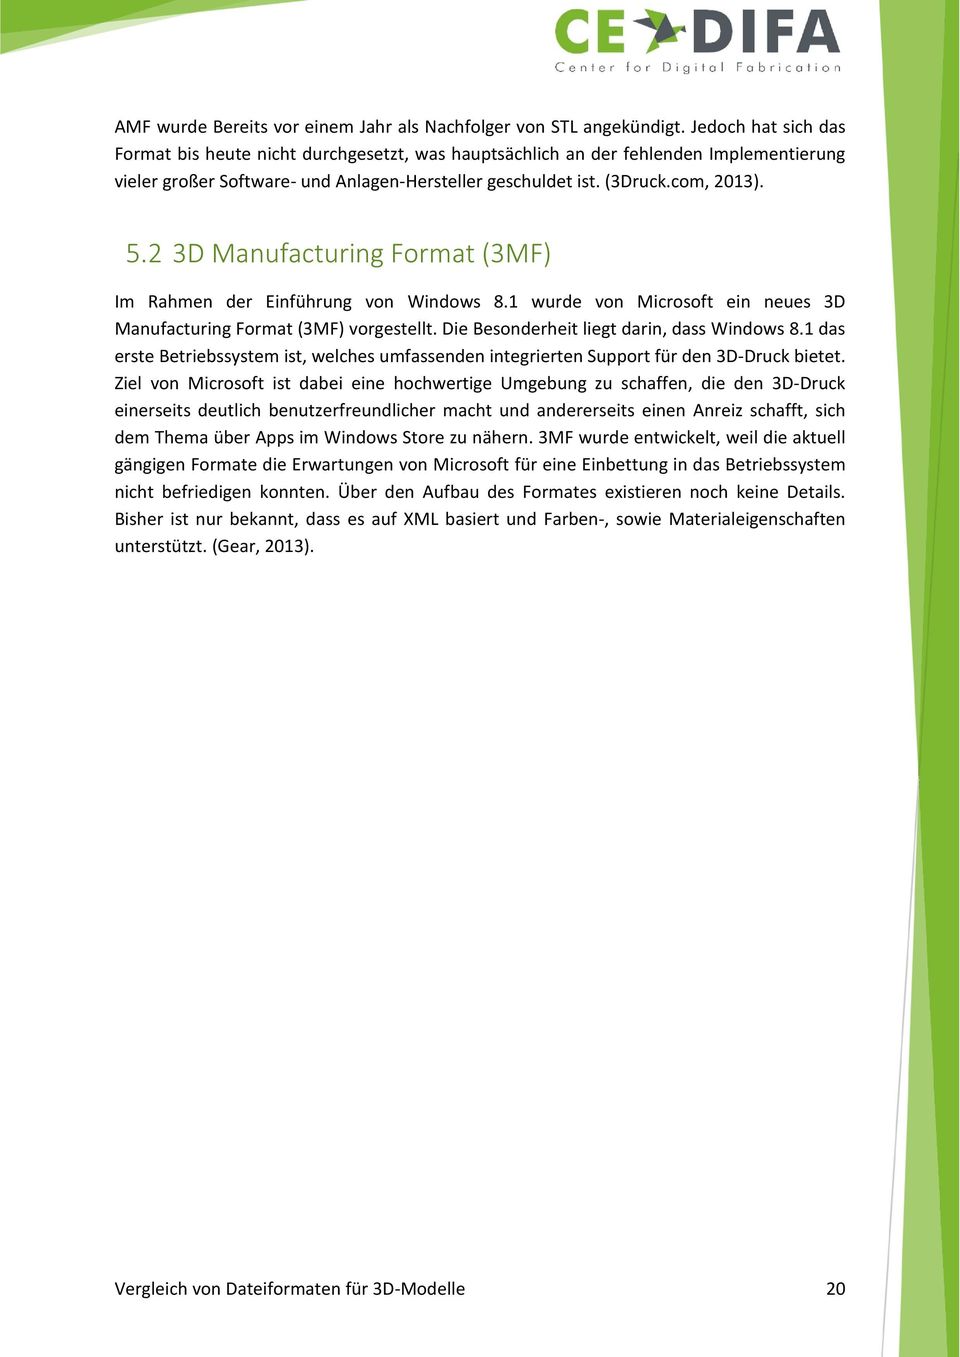 2 3D Manufacturing Format (3MF) Im Rahmen der Einführung von Windows 8.1 wurde von Microsoft ein neues 3D Manufacturing Format (3MF) vorgestellt. Die Besonderheit liegt darin, dass Windows 8.